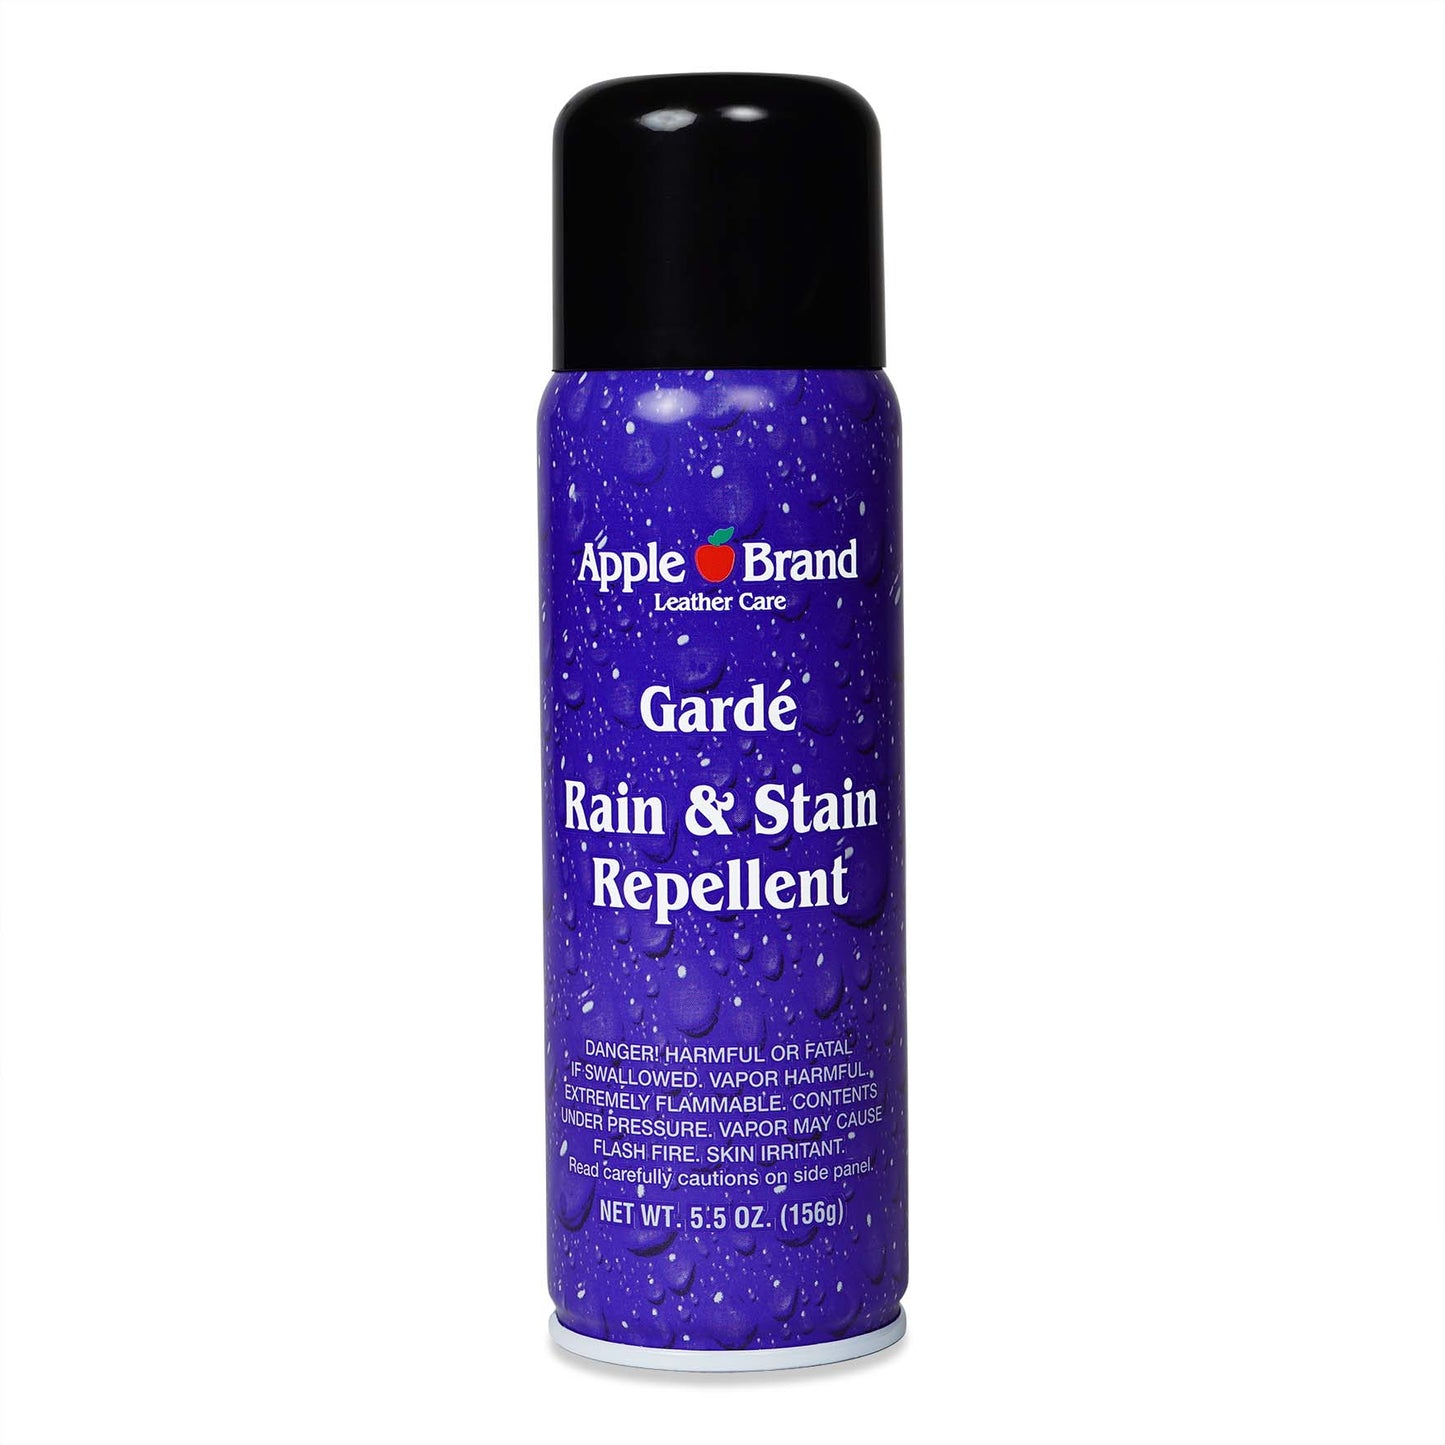 Garde Rain & Stain Water Repellent